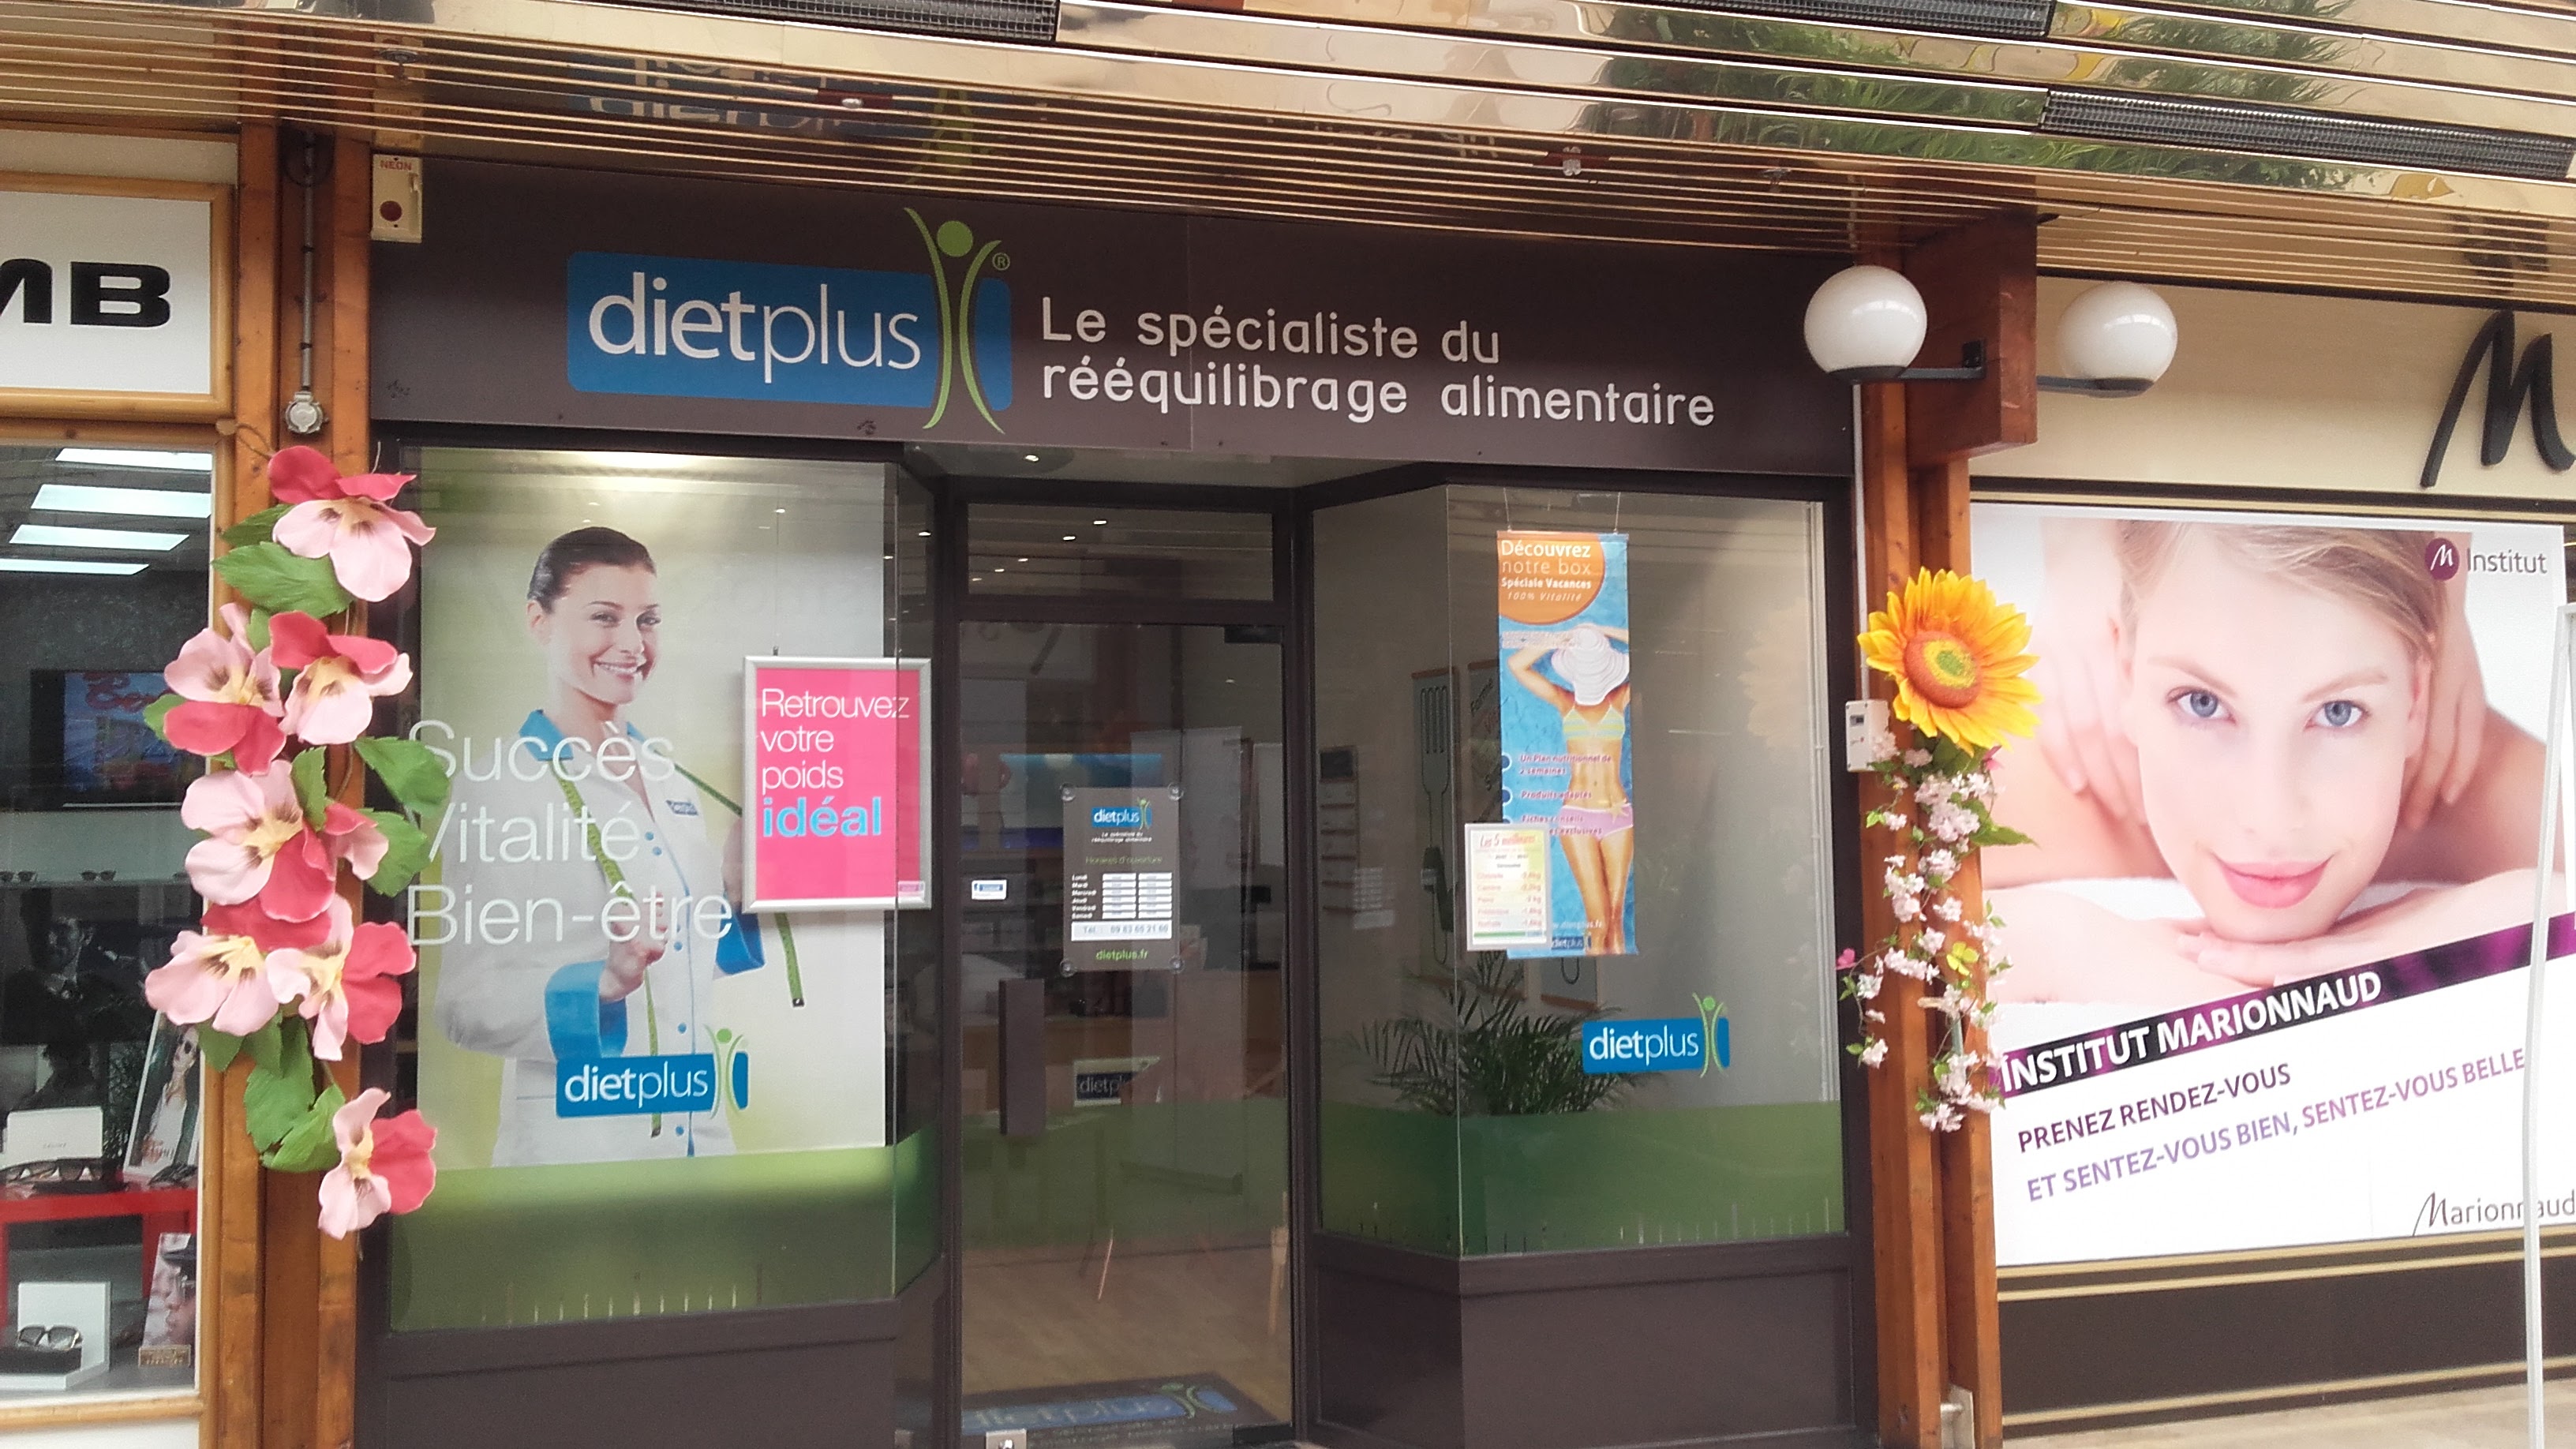 dietplus le specialiste du rééquilibrage alimentaire au centre commercial du Val de Seine à Vernouillet